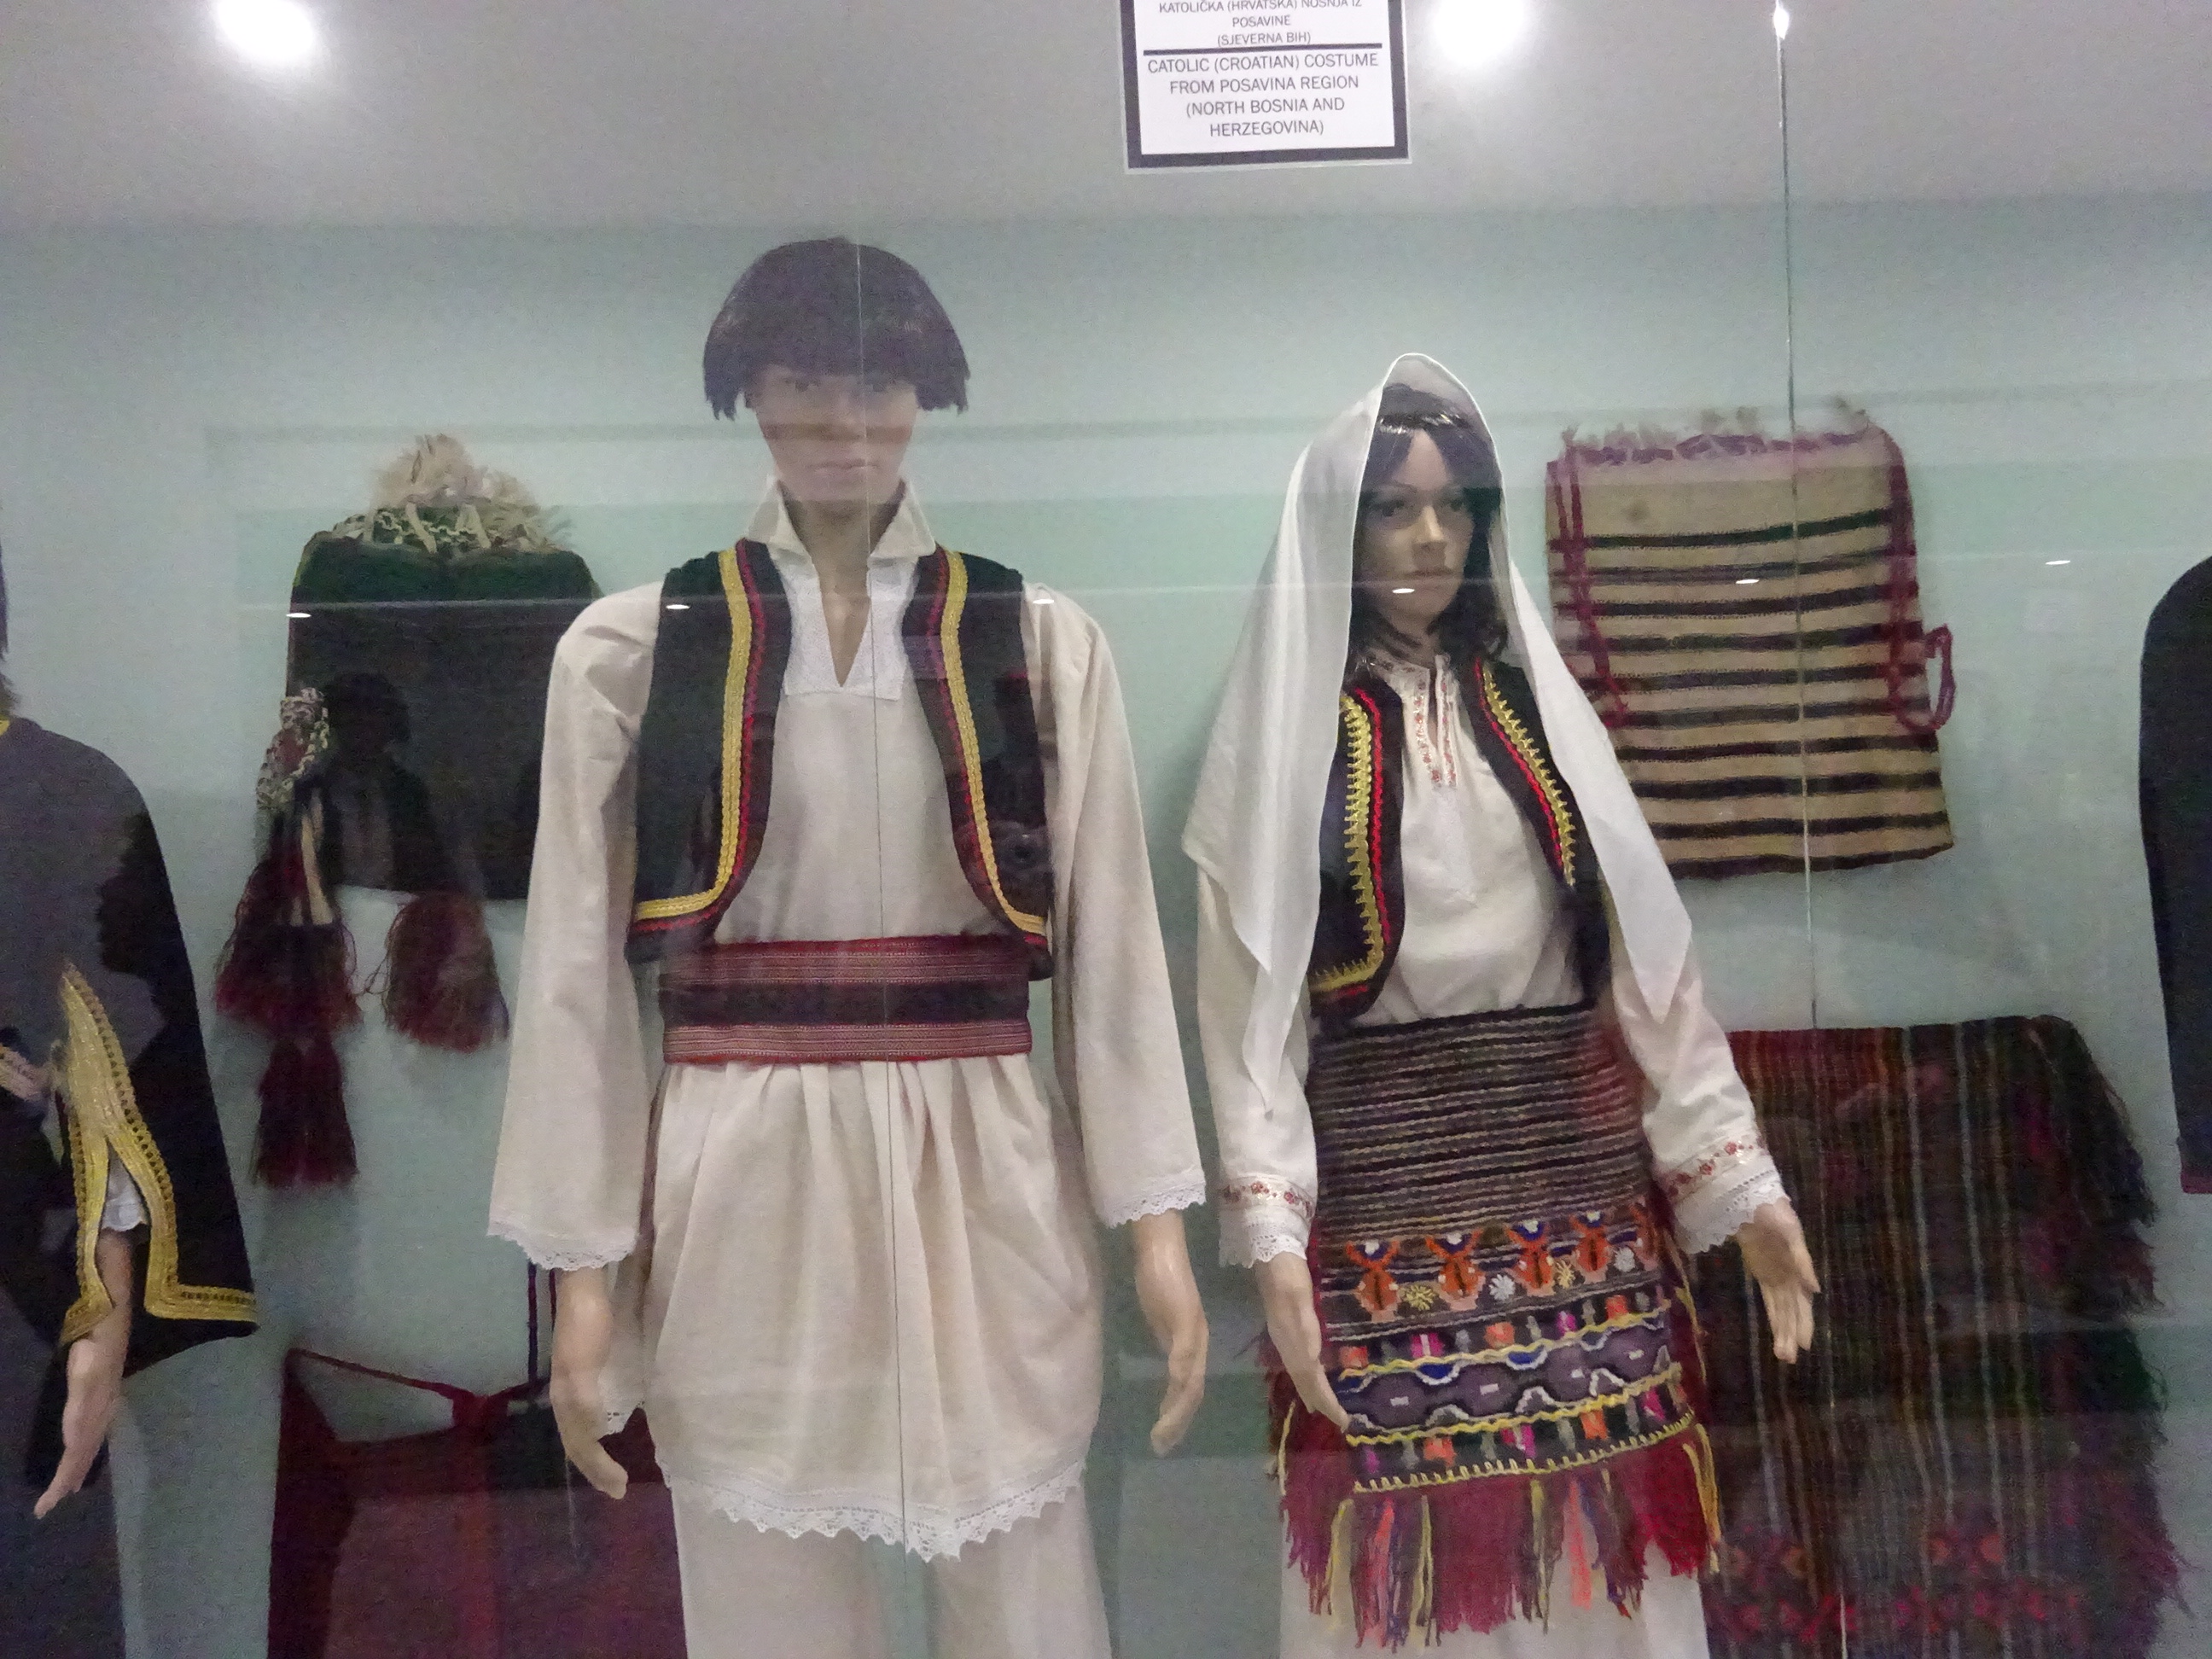 モスタルの博物館「BosnaSeum」民族衣装の展示品